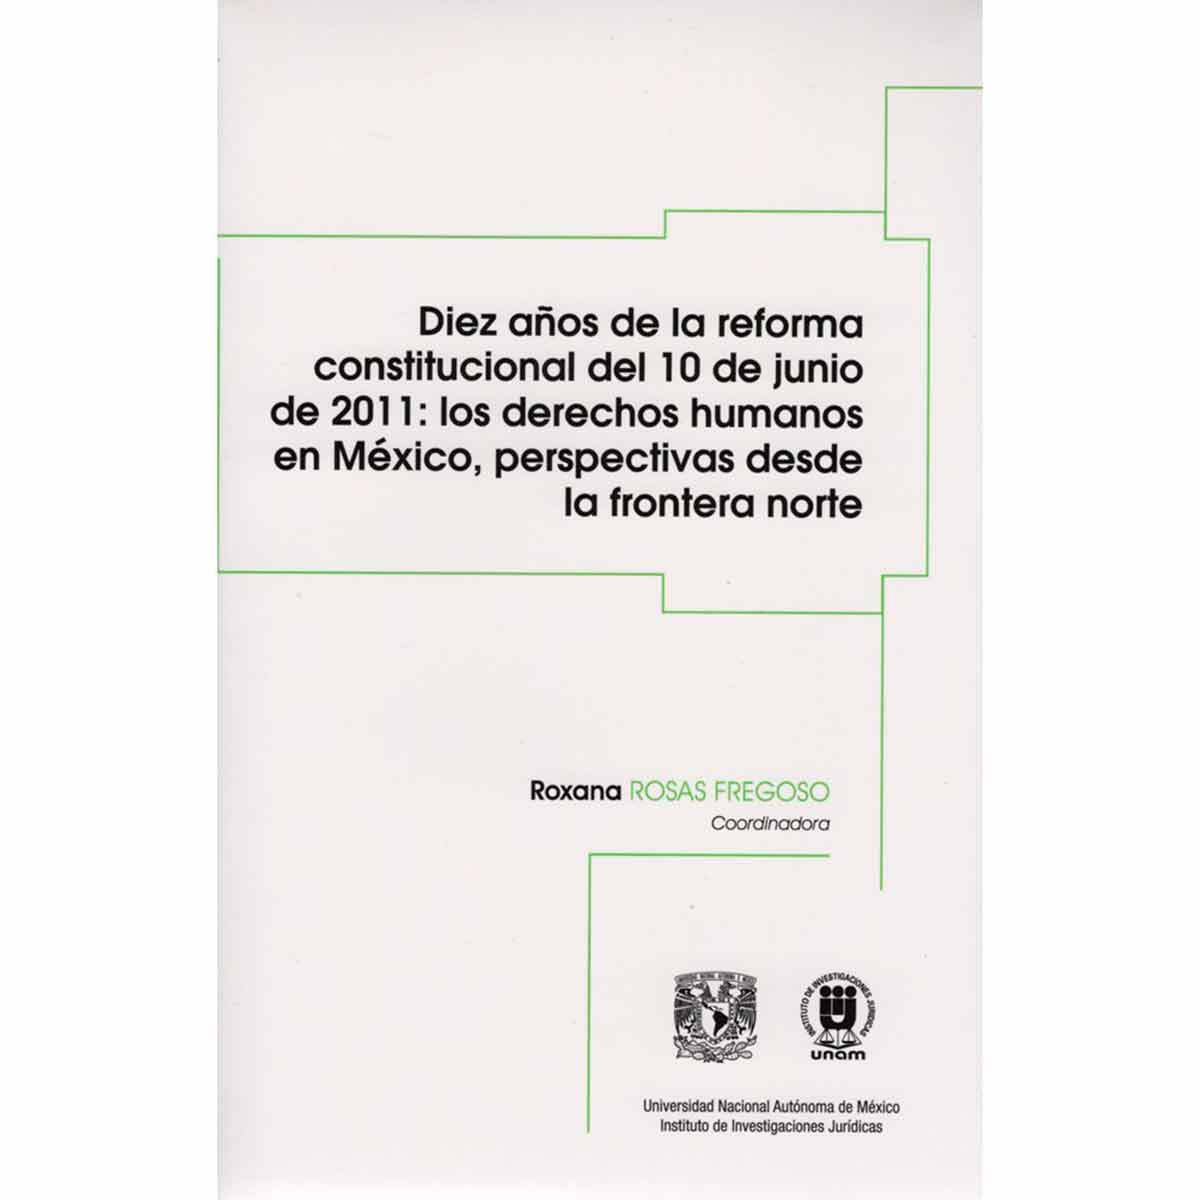 DIEZ AÑOS DE LA REFORMA CONSTITUCIONAL DEL 10 DE JUNIO DE 2011: LOS DERECHOS HUMANOS EN MÉXICO, PERSPECTIVAS DESDE LA FRONTERA NORTE